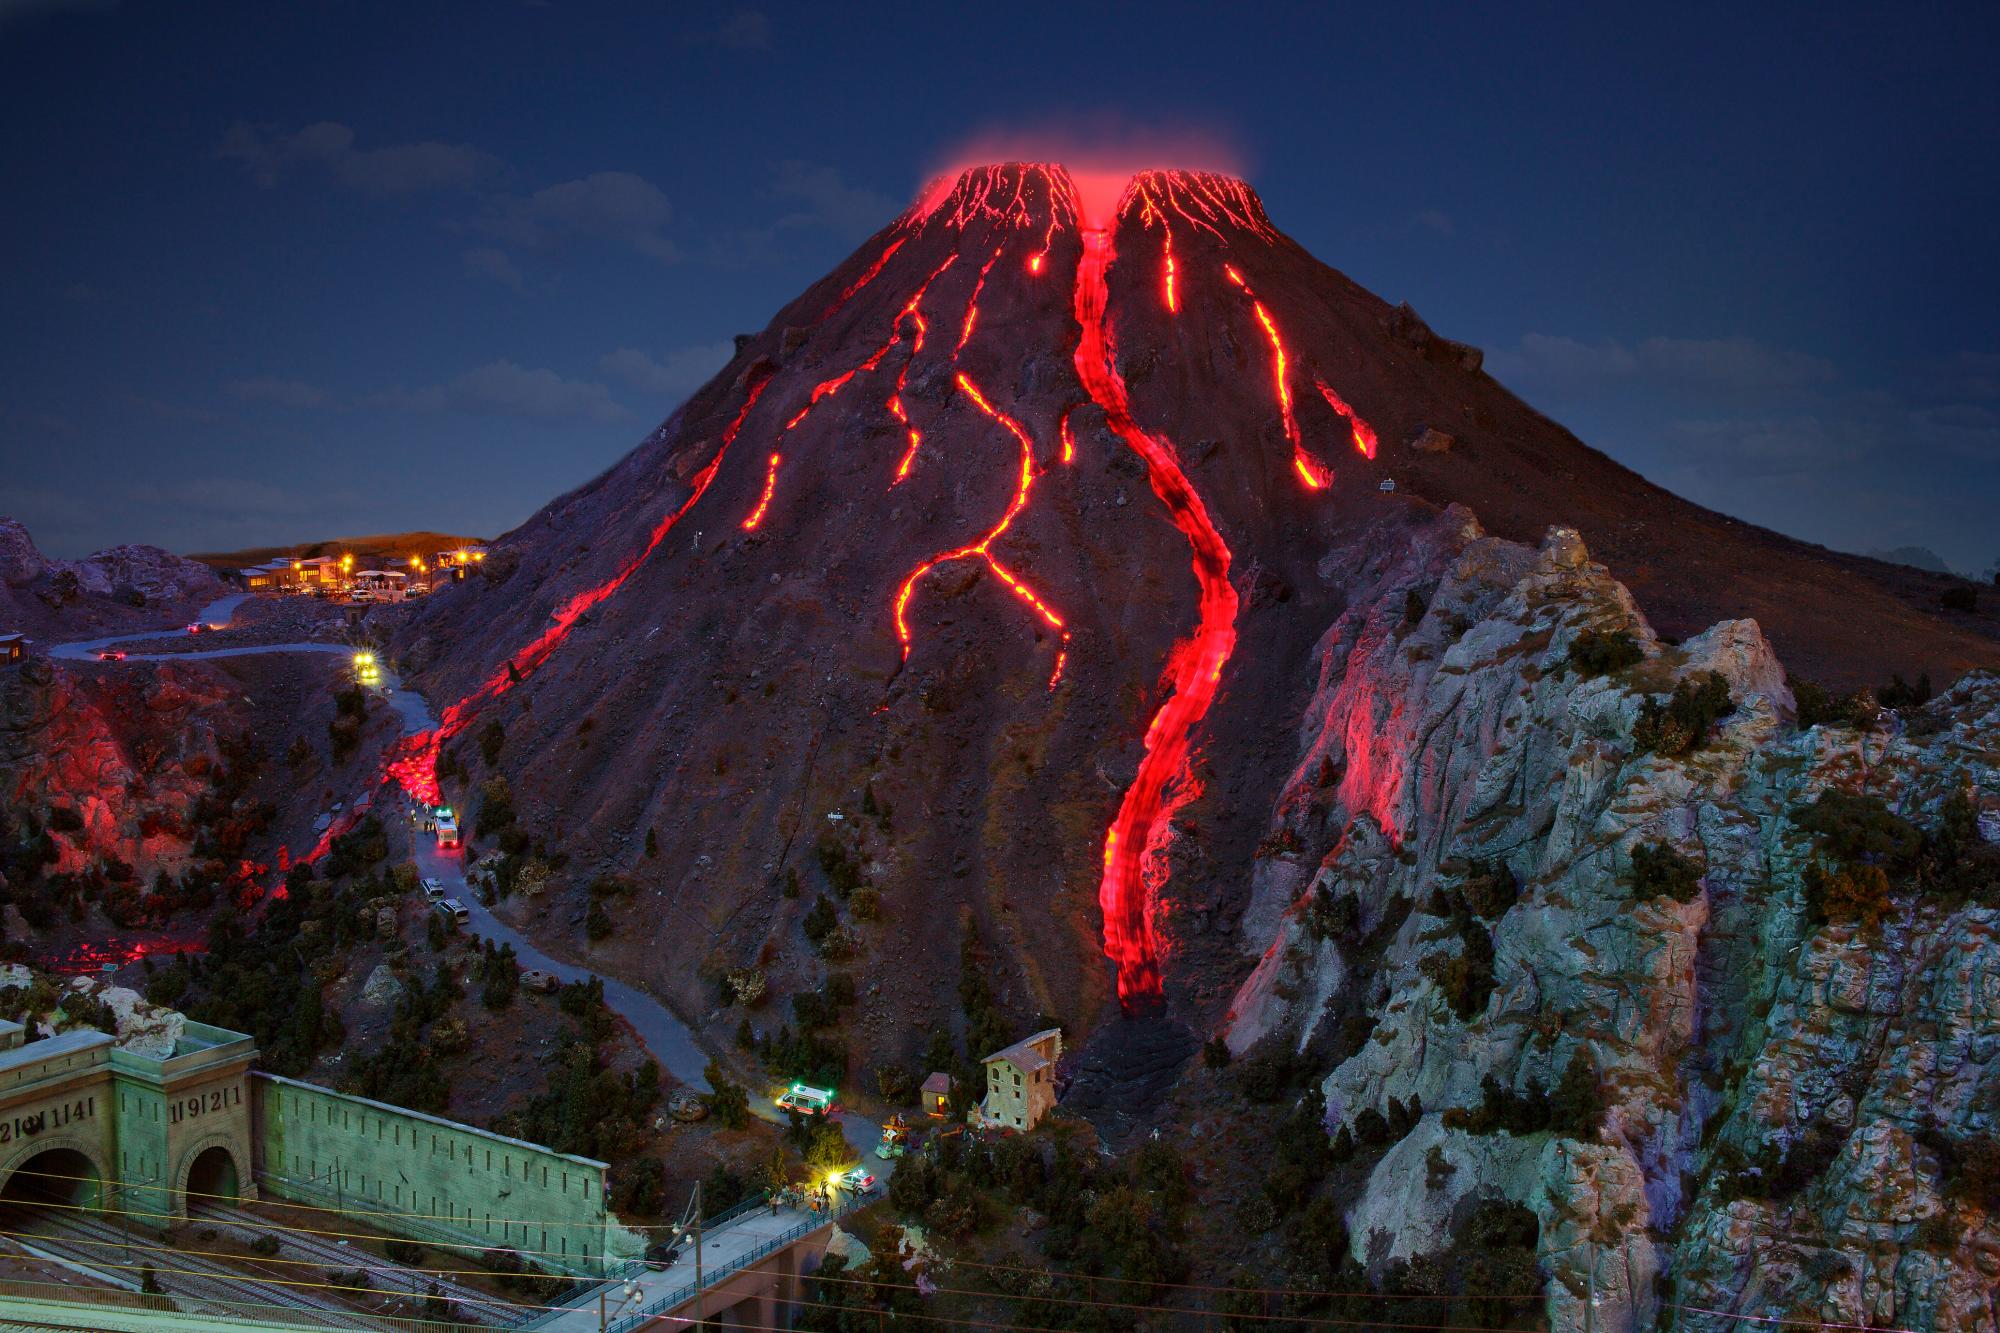 Impresionante imagen nocturna del monte Vesubio en Italia soltando lava por sus fauces.